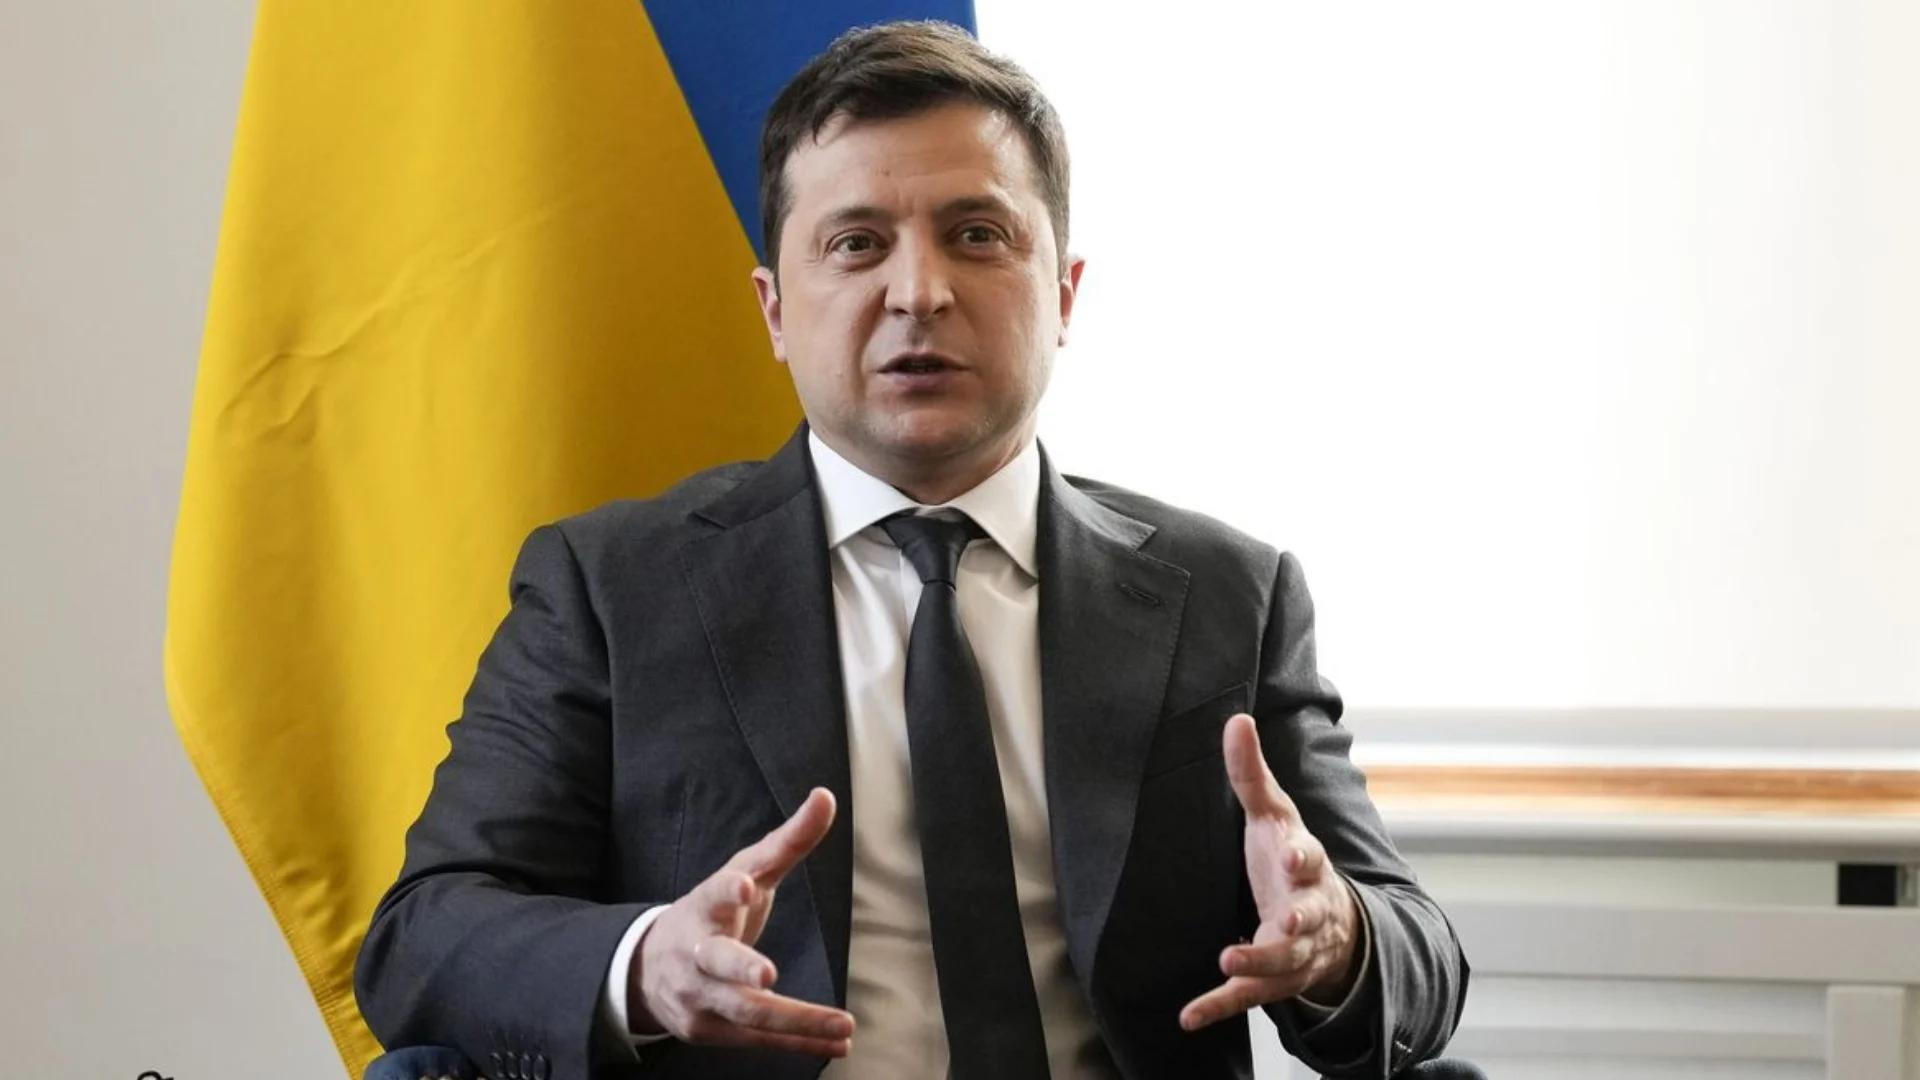 Presidente da Ucrânia diz que país foi abandonado. Foto de Zelensky usando terno cinza, pelo branca, cabelos e gravata preta. Ele gesticula com as mãos, bandeira da Ucrânia ao fundo.